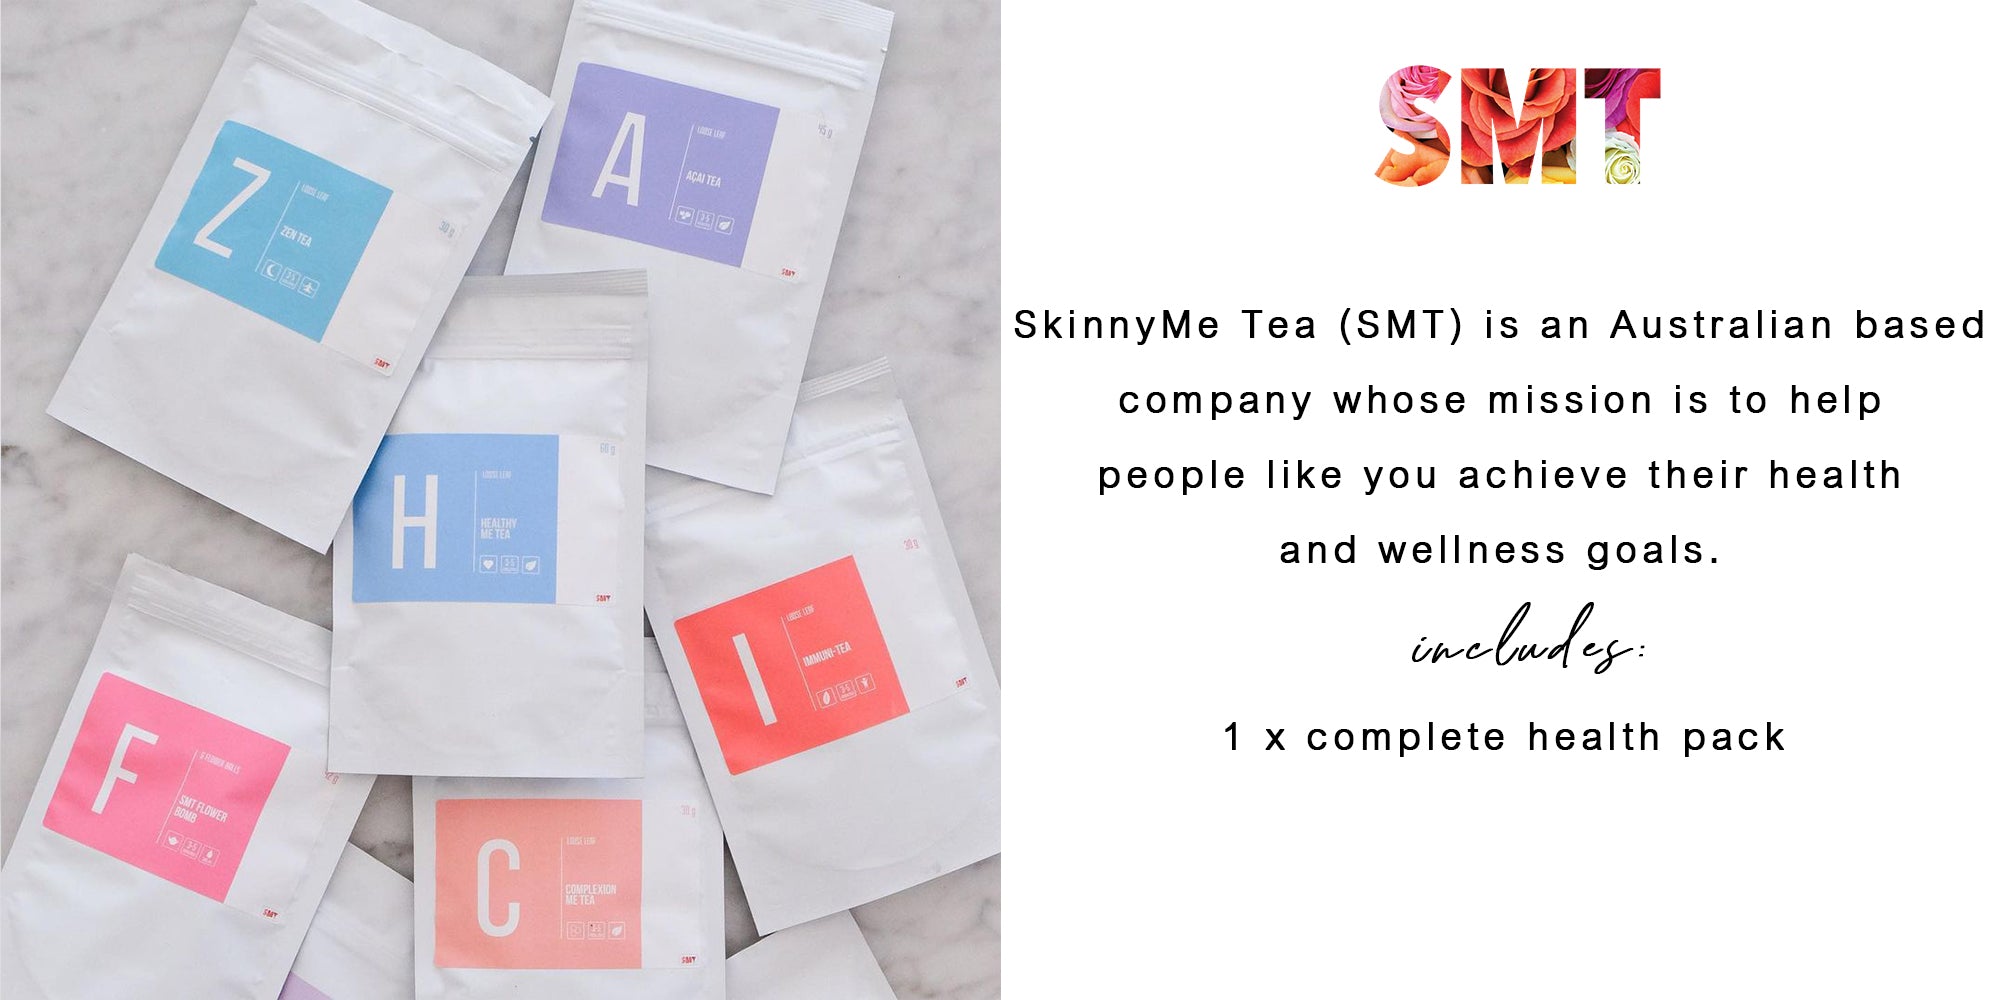 SkinnyMe Tea